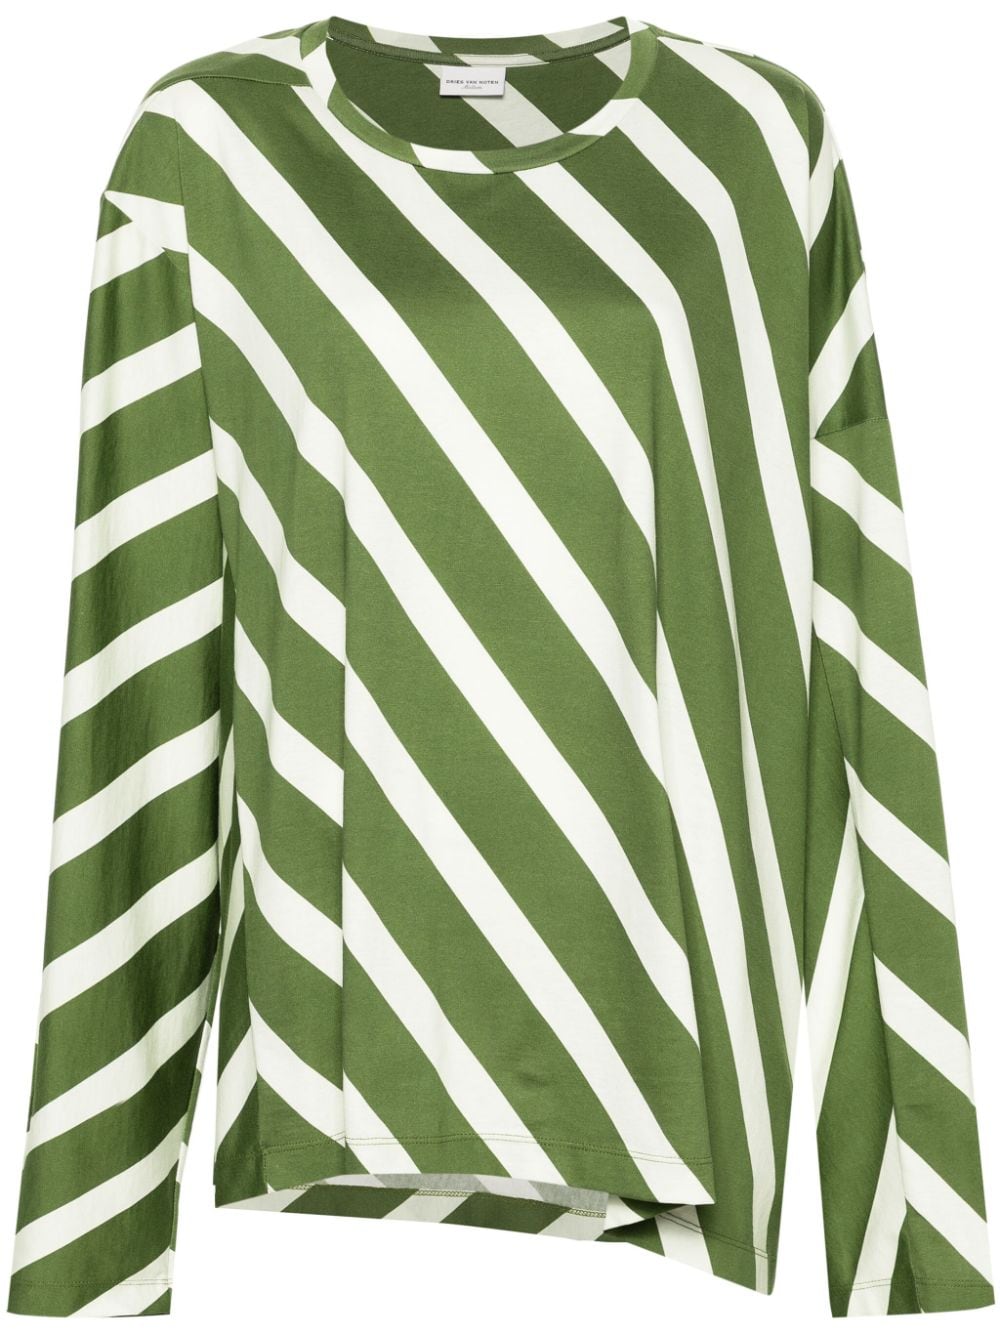 DRIES VAN NOTEN striped cotton T-shirt - Green